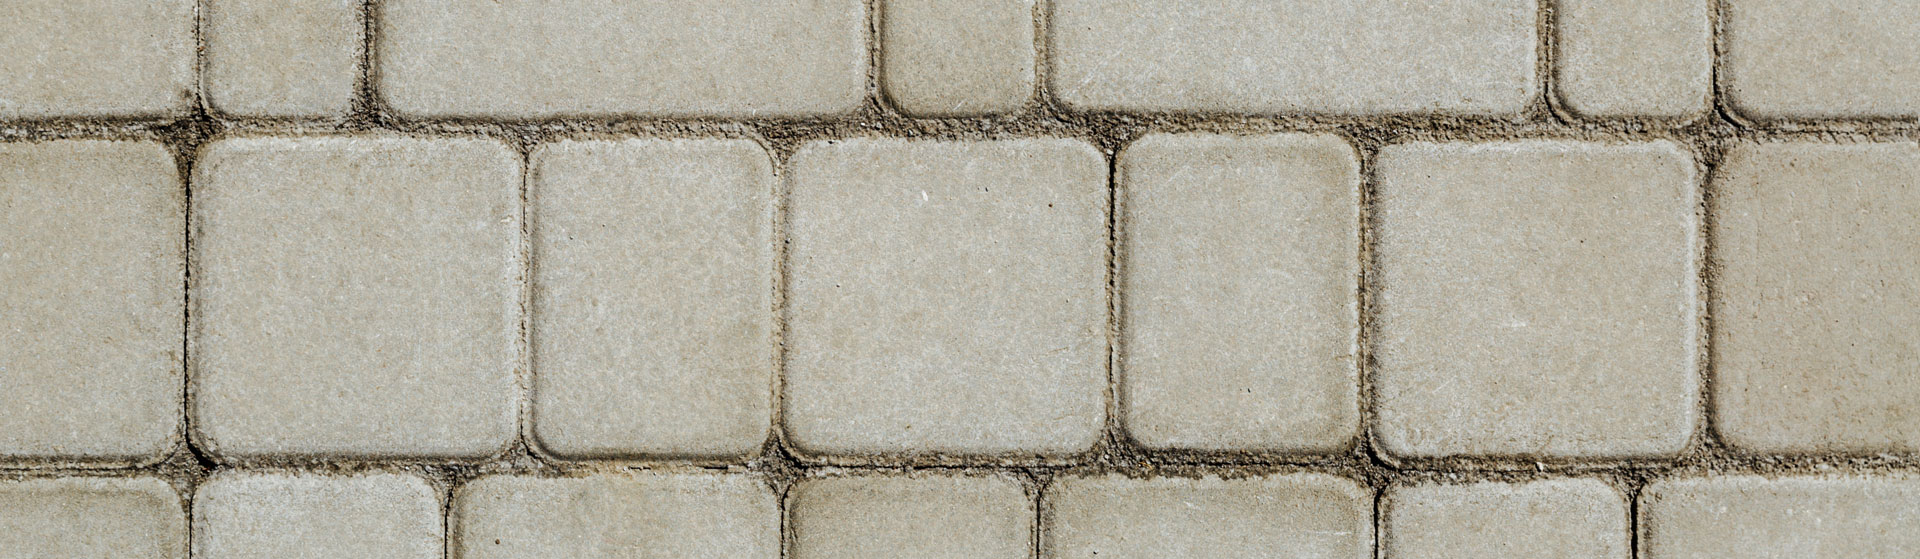 stone patio floors